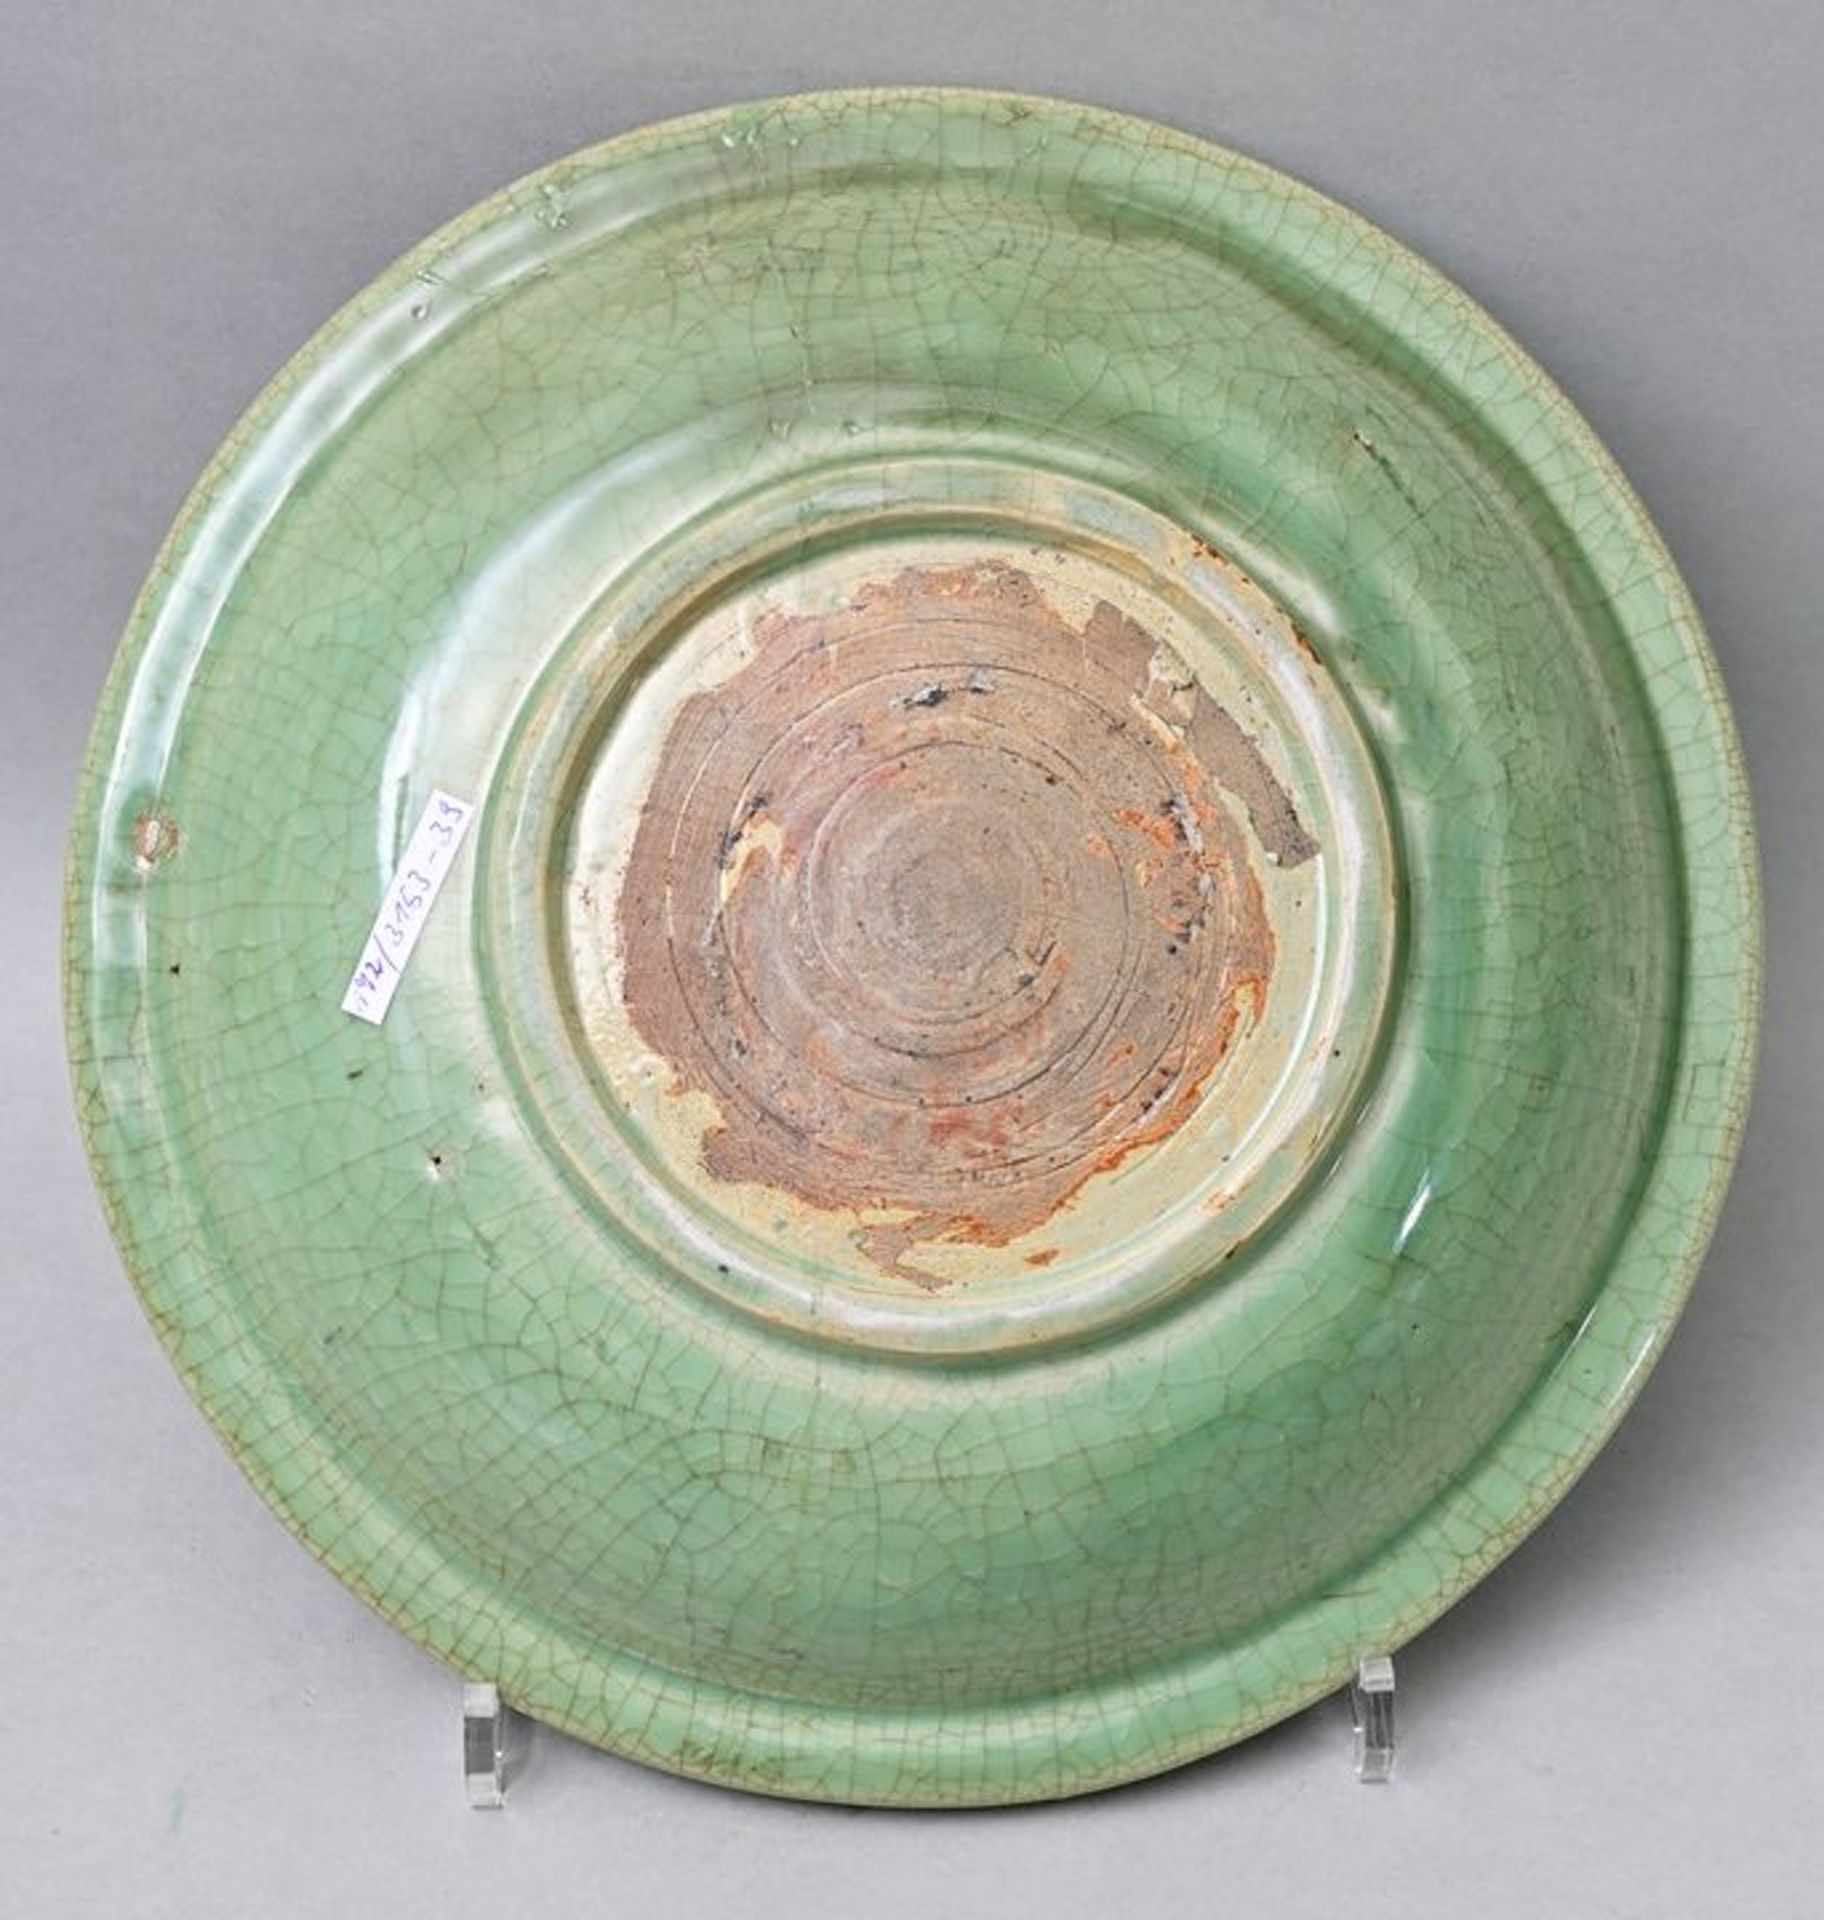 Platte grüne Glasur/ greenware plate - Image 2 of 4